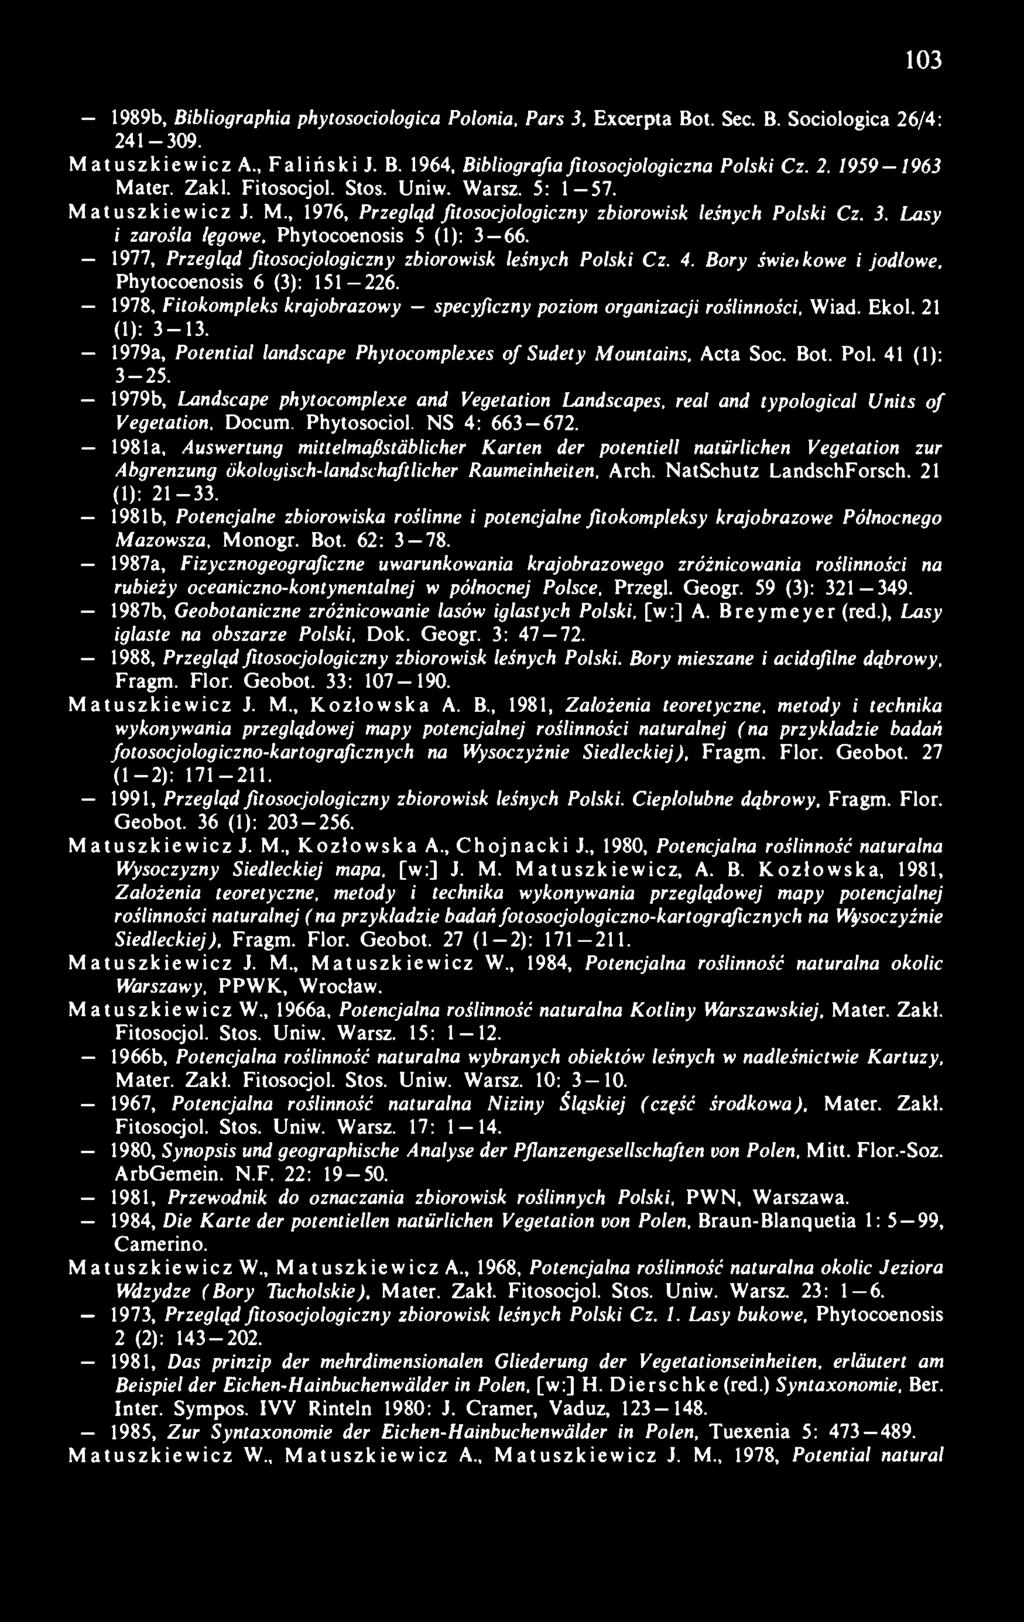 1977, Przegląd fitosocjologiczny zbiorowisk leśnych Polski Cz. 4. Bory świeikowe i jodłowe, Phytocoenosis 6 (3): 151-226.